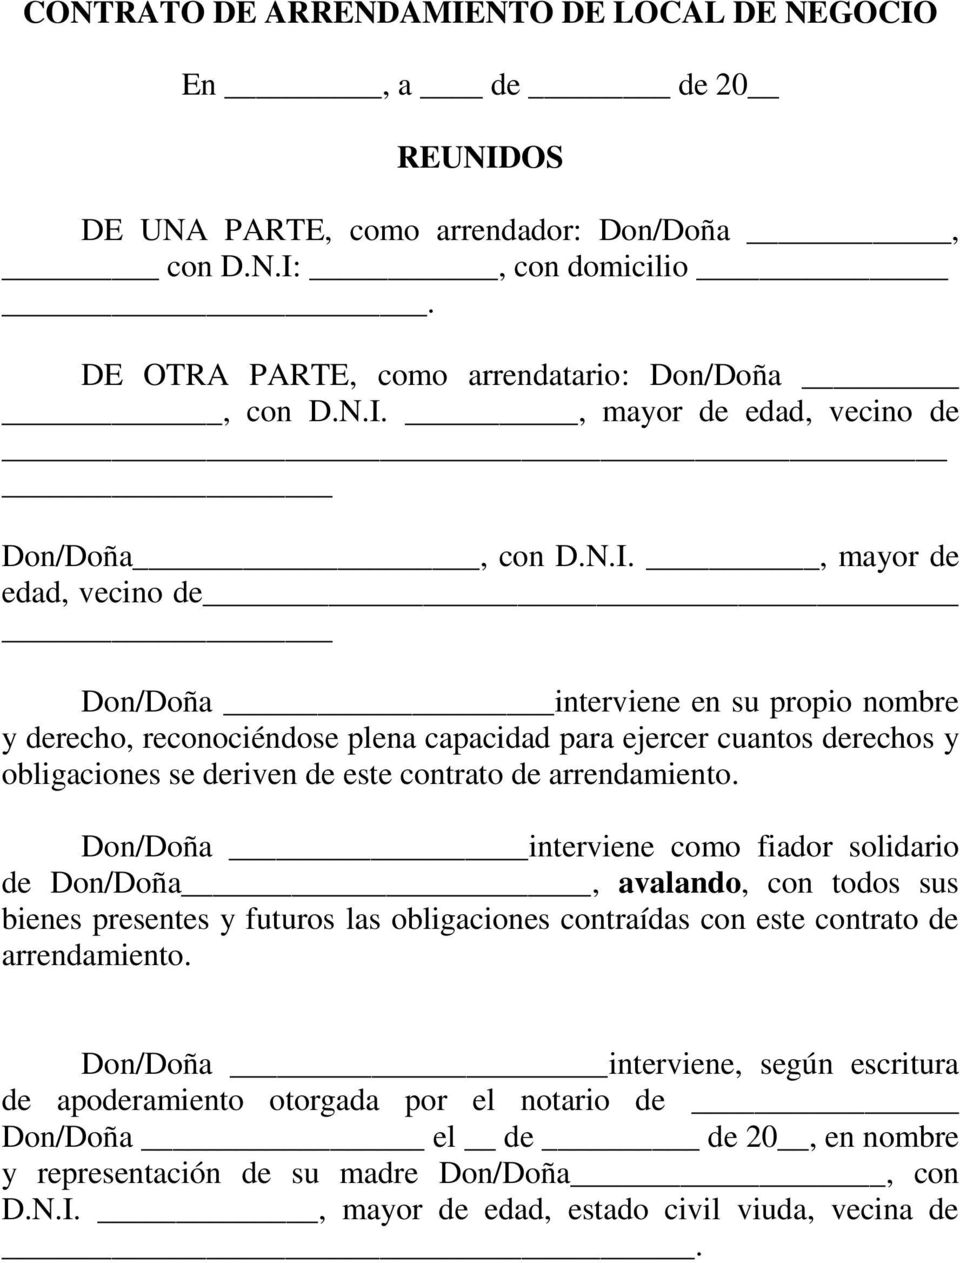 arrendamiento. Don/Doña interviene como fiador solidario de Don/Doña, avalando, con todos sus bienes presentes y futuros las obligaciones contraídas con este contrato de arrendamiento.